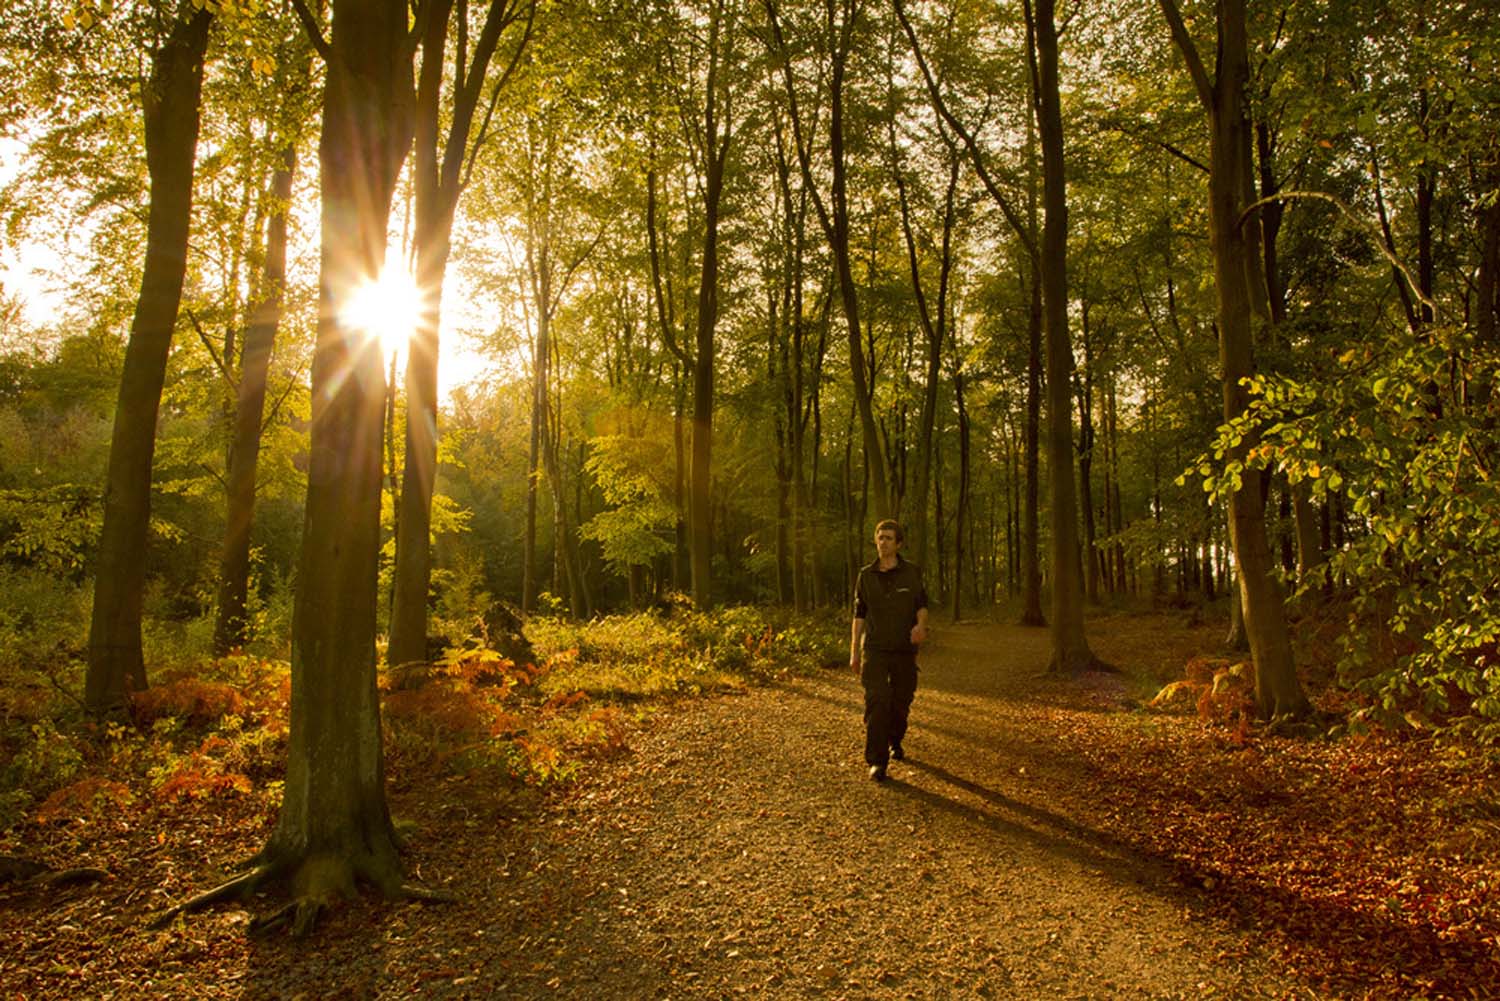 A man walks through the autumn trees at Beacon Hill